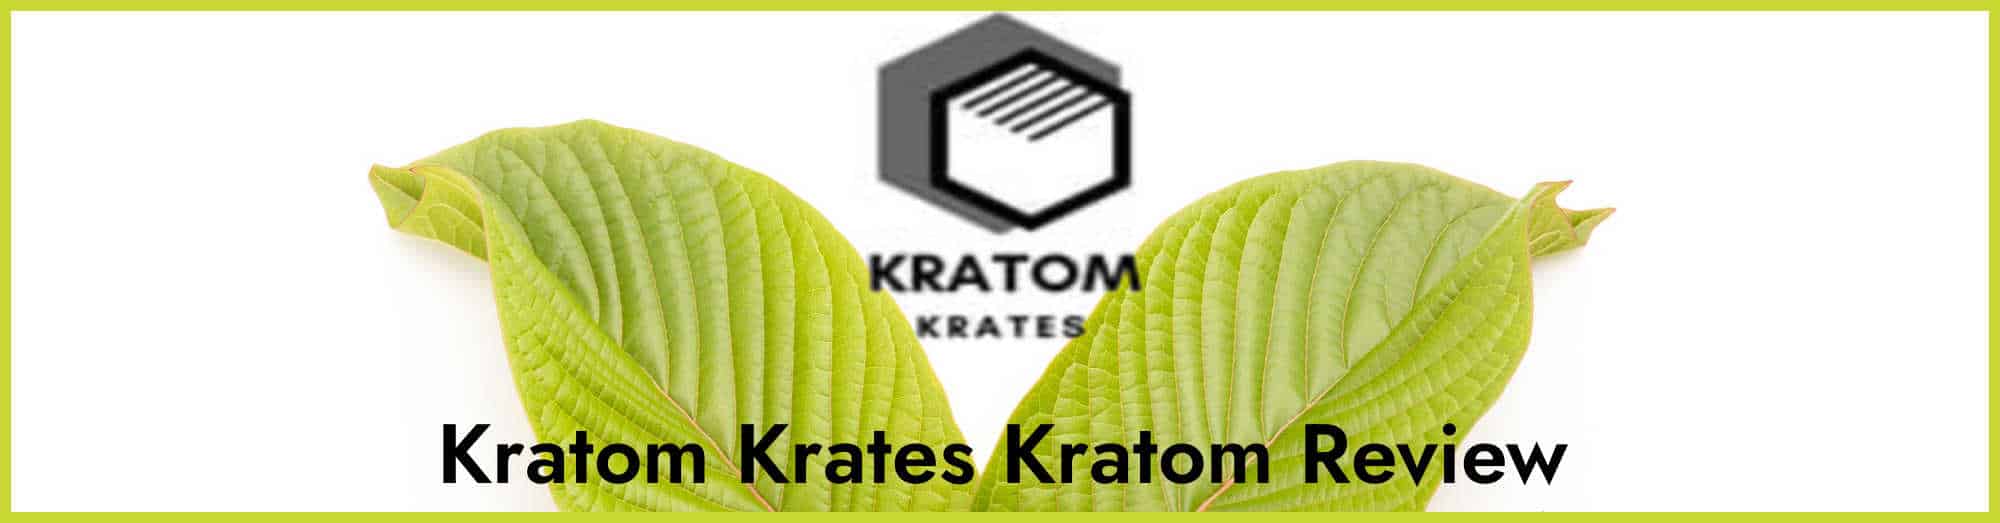 Wholesale Kratom Distributors List • Golden Monk